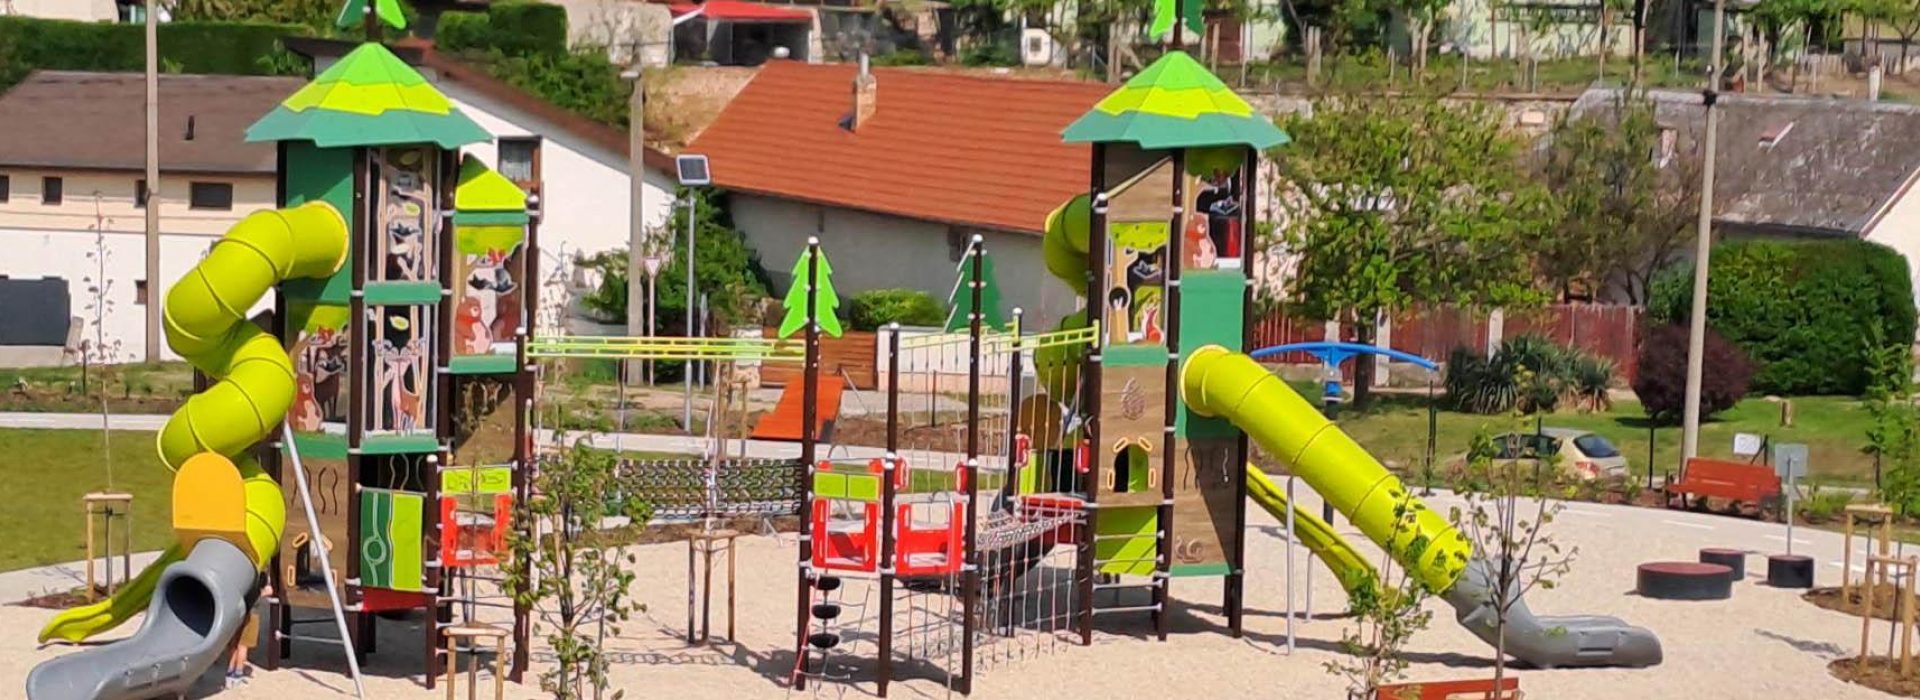 Új szabadidőpark létesült Nyergesújfalun - sajtóközlemény